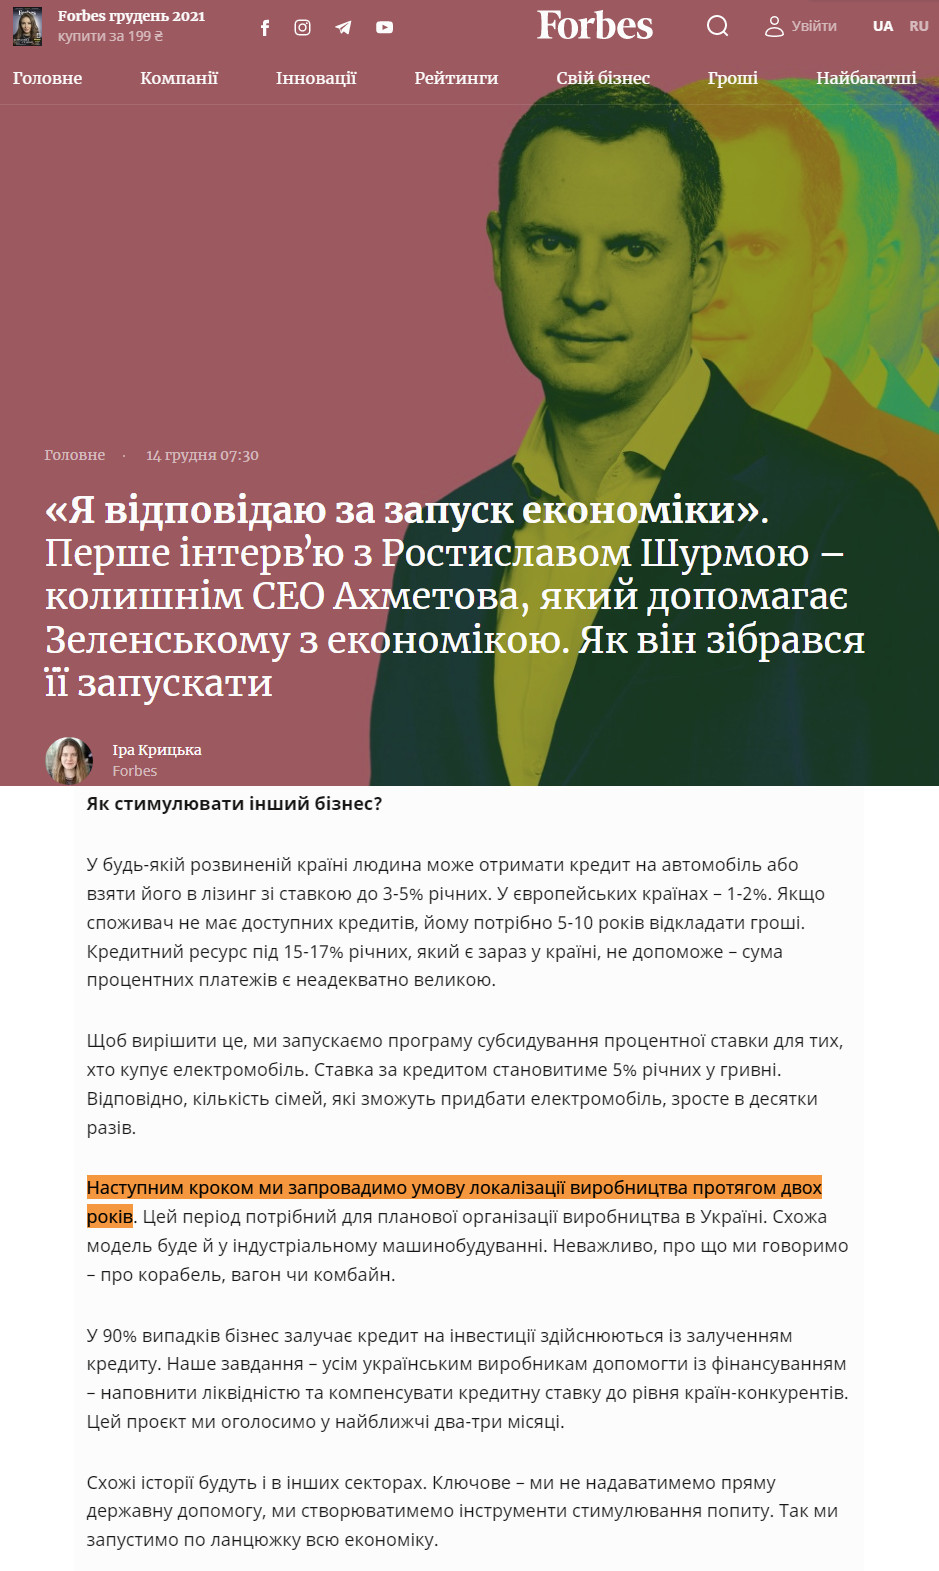 https://forbes.ua/news/ya-otvechayu-za-zapusk-ekonomiki-intervyu-s-rostislavom-shurmoy-byvshim-menedzherom-akhmetova-kotoryy-pomogaet-zelenskomu-s-ekonomikoy-chto-u-nego-v-golove-13122021-2962